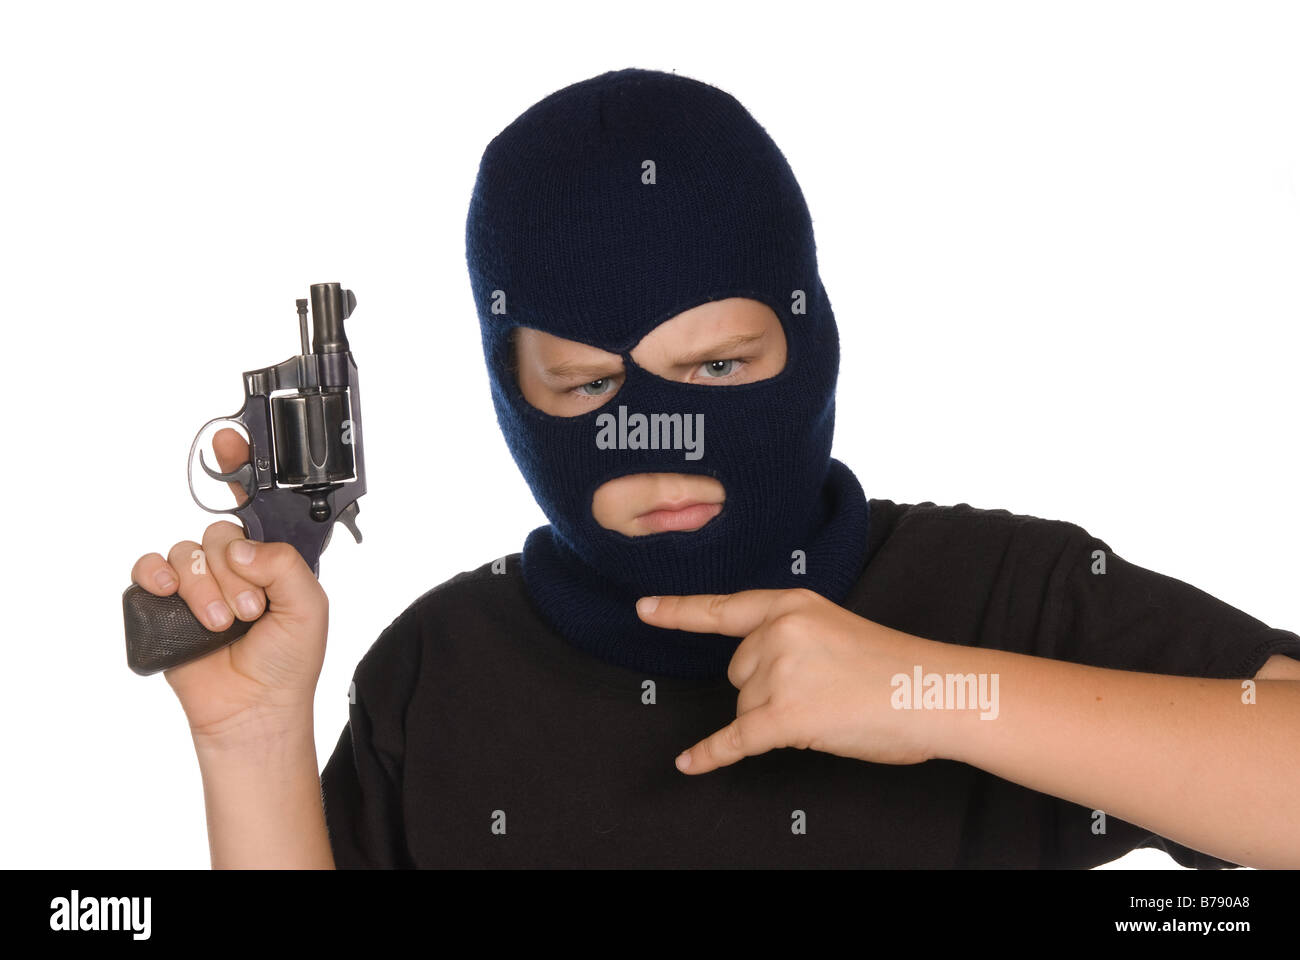 Un jeune garçon clignote sa bande signe et arme pour montrer son engagement en matière d'actes criminels et de mauvaises manières Banque D'Images